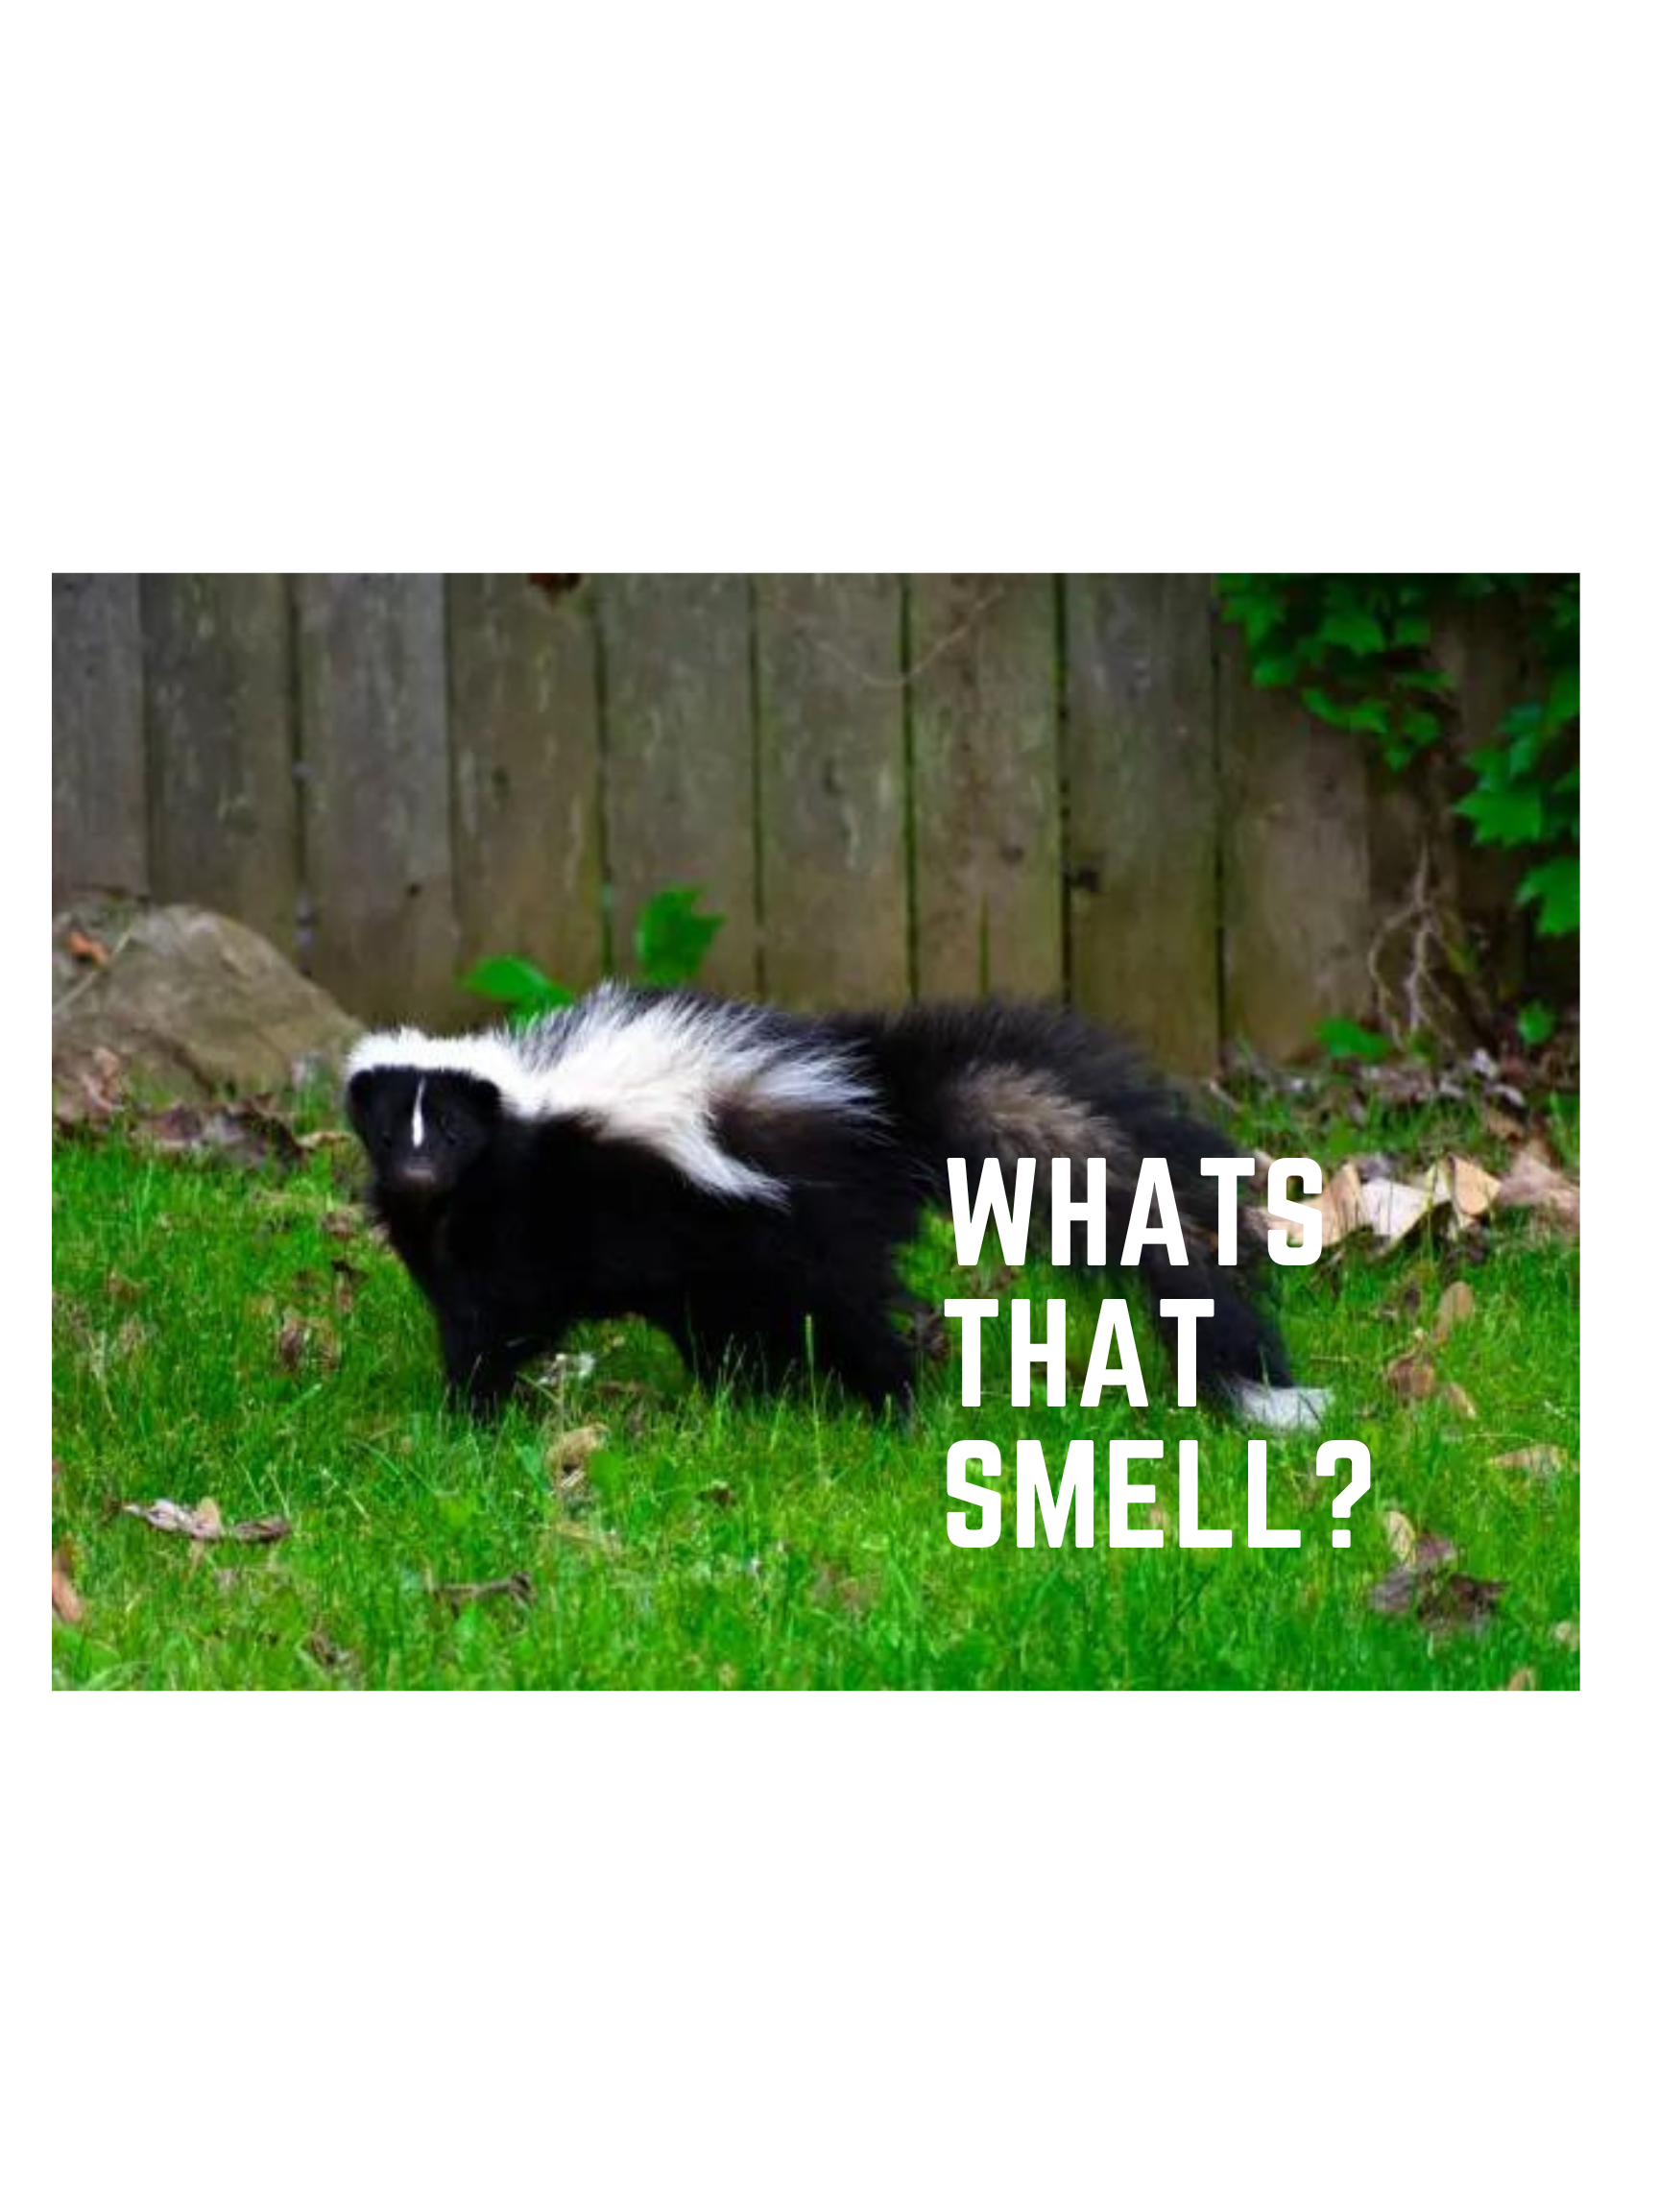 skunk in backyard